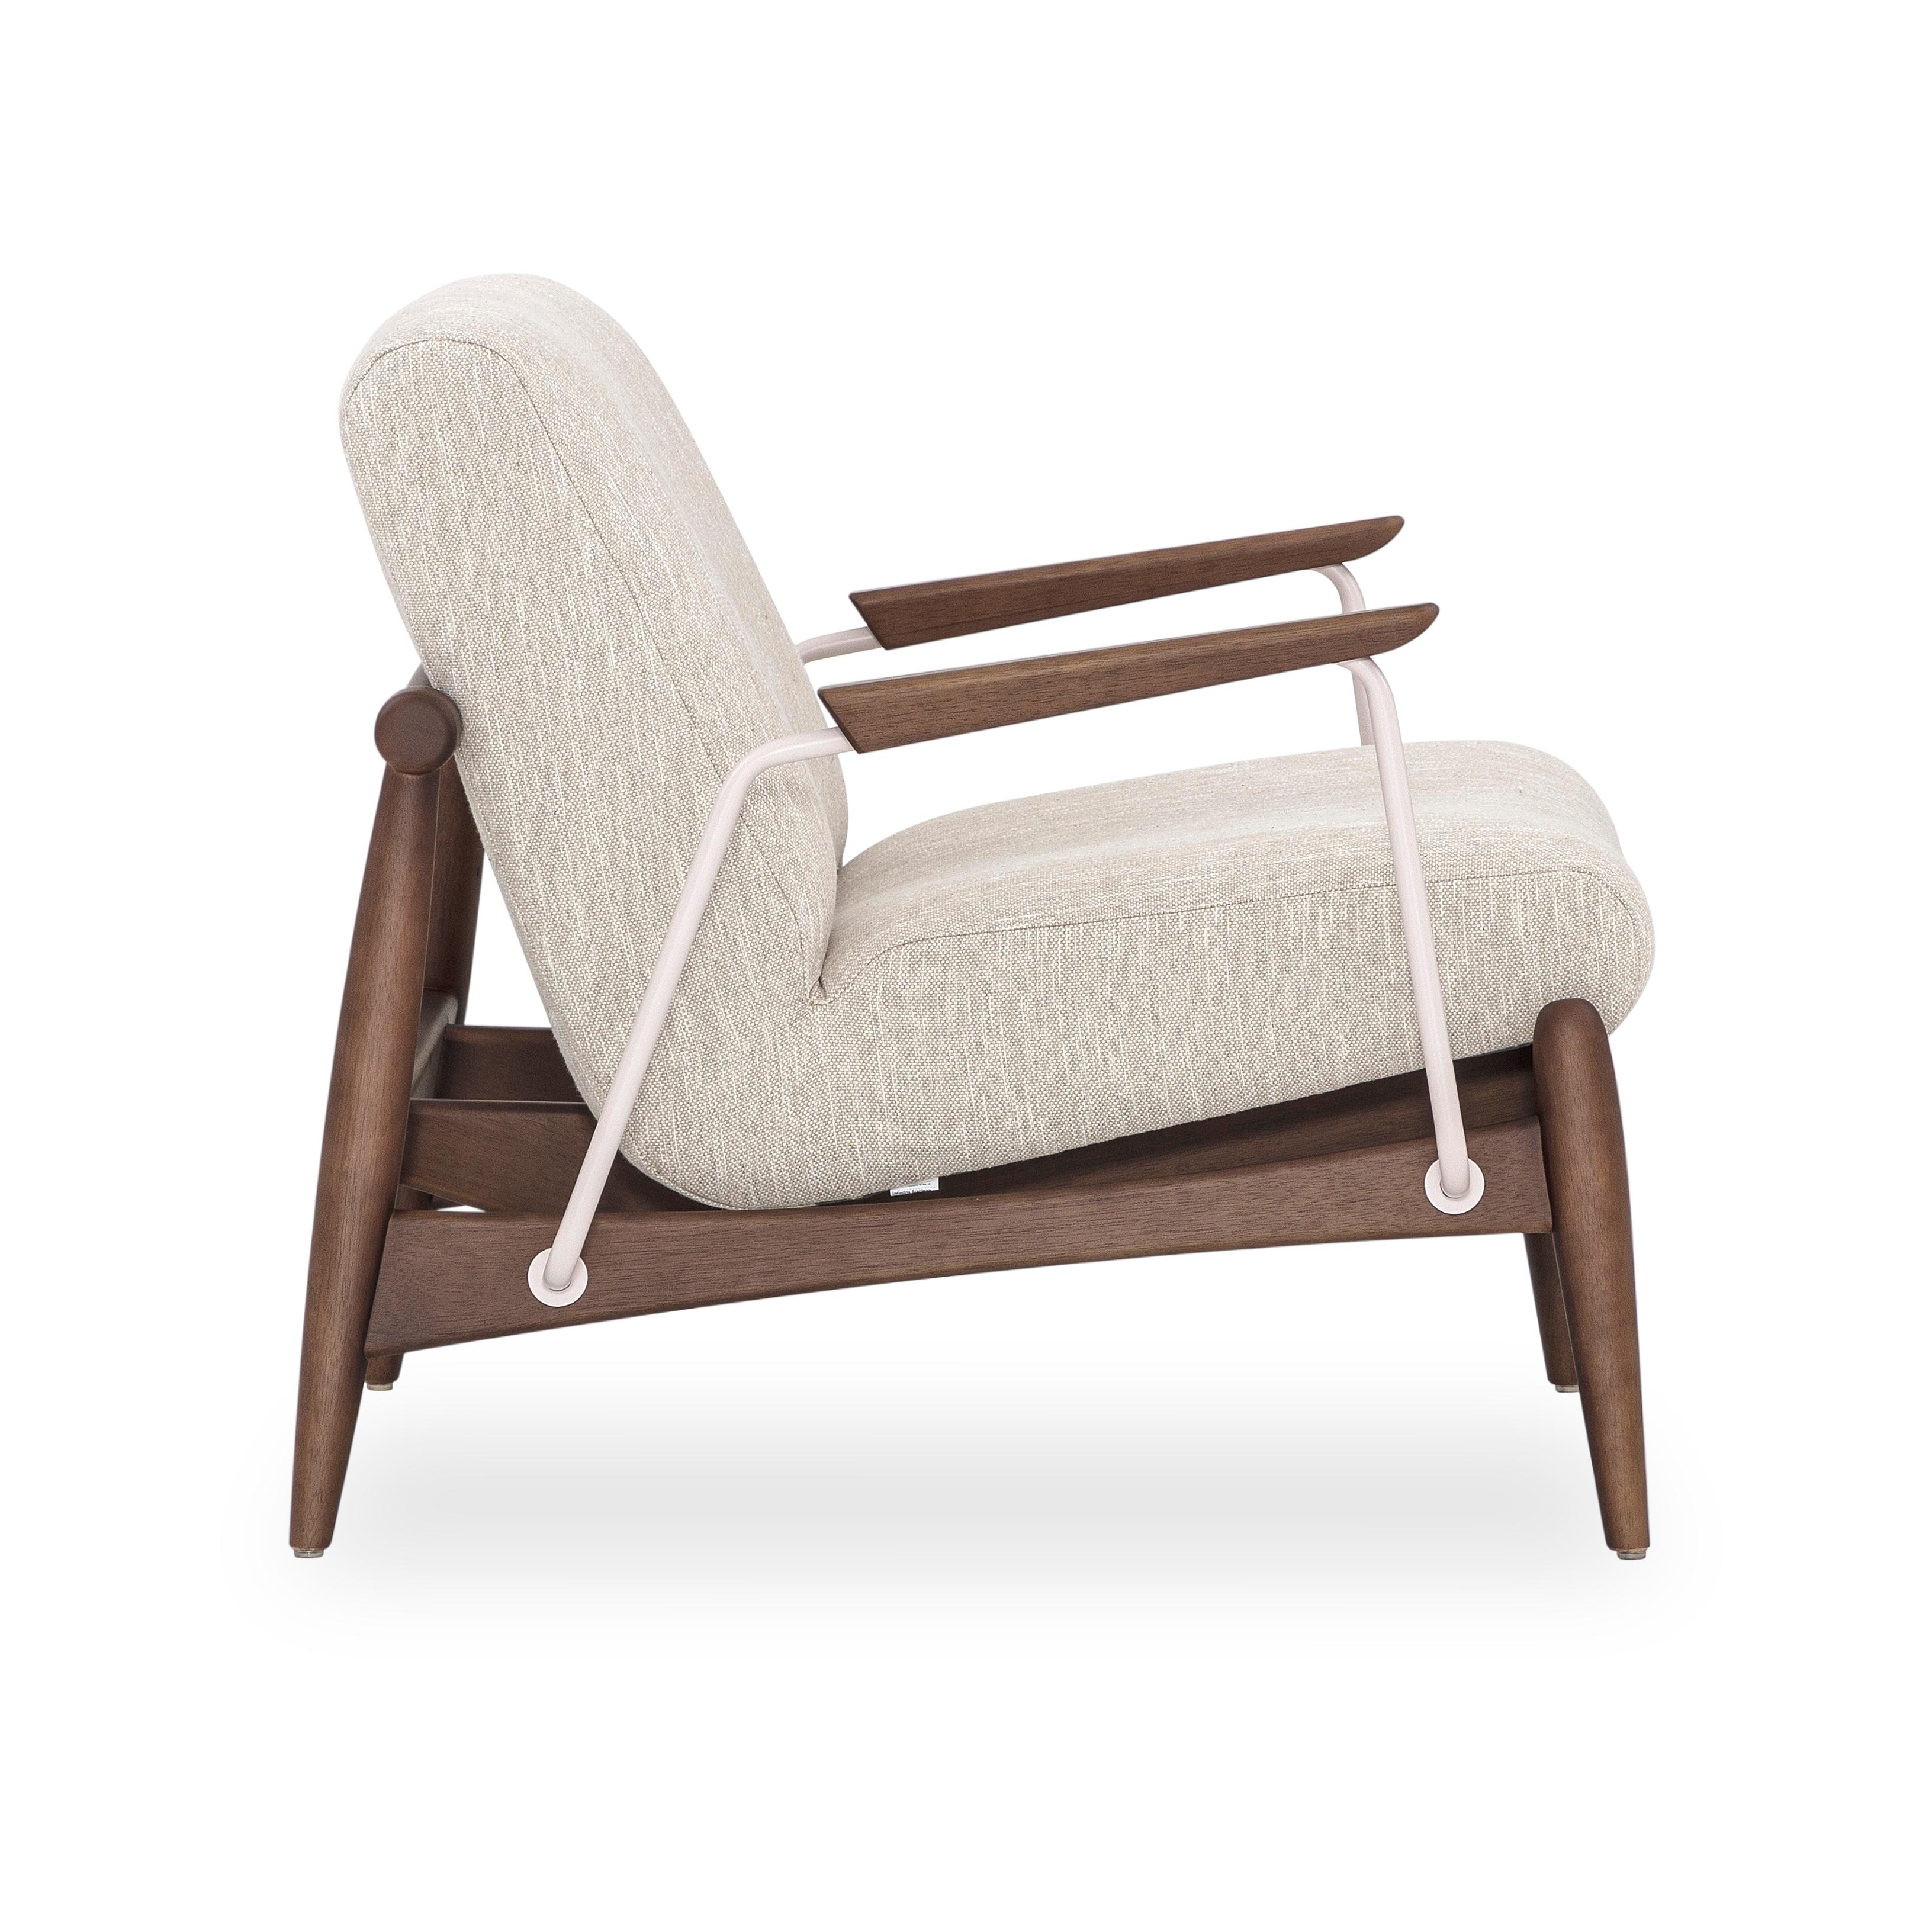 Le fauteuil Win présente des garnitures en métal avec un cadre en finition bois de noyer, enveloppé d'un magnifique tissu ivoire. Notre incroyable équipe de design Uultis a créé ce fauteuil pour votre confort et votre soutien, que vous pouvez placer